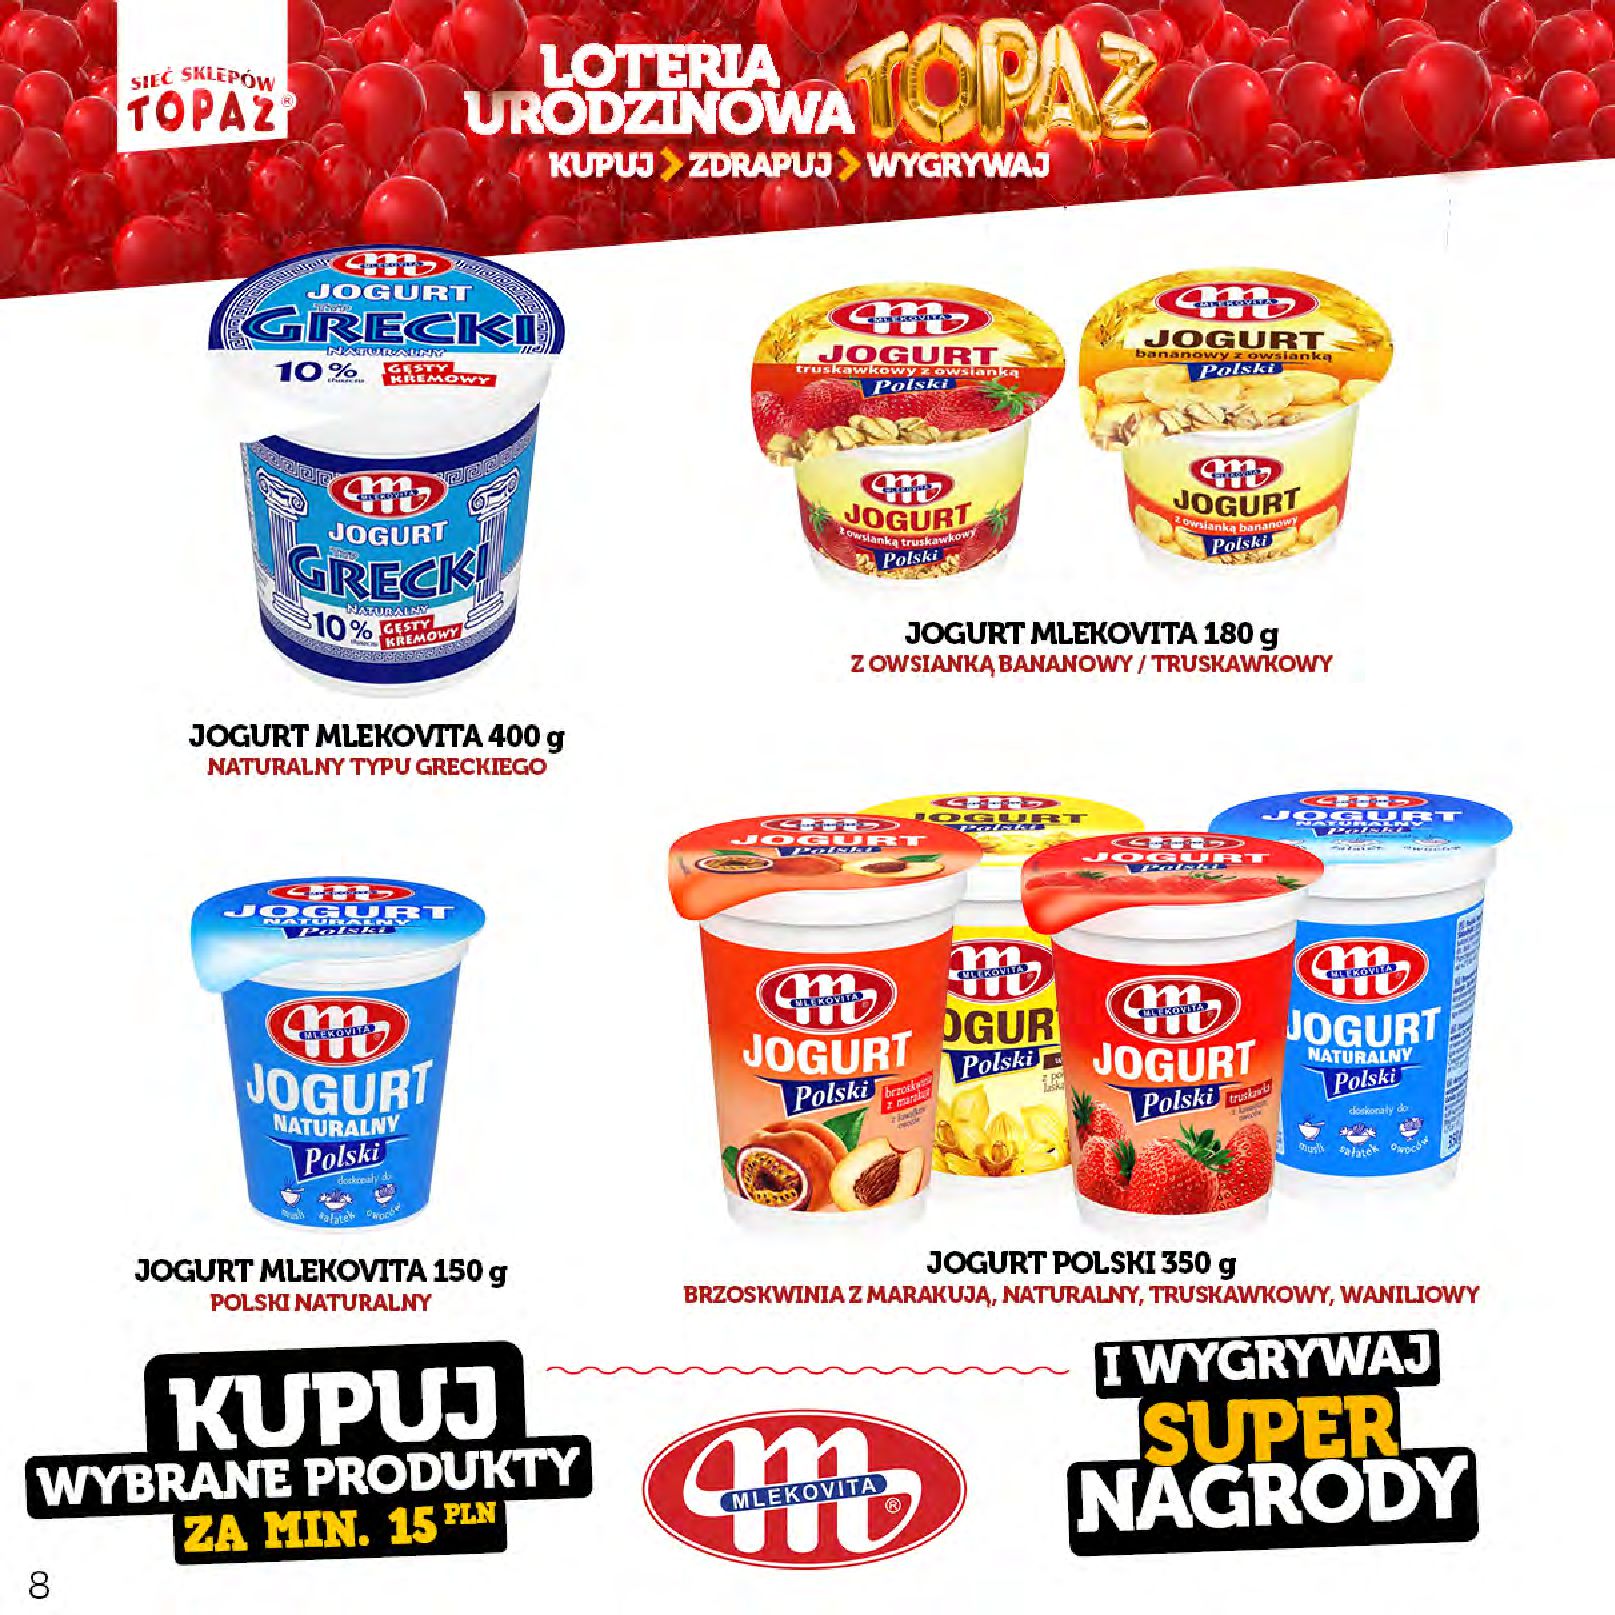 Gazetka TOPAZ: Gazetka Topaz - Loteria urodzinowa 2023-04-17 page-8